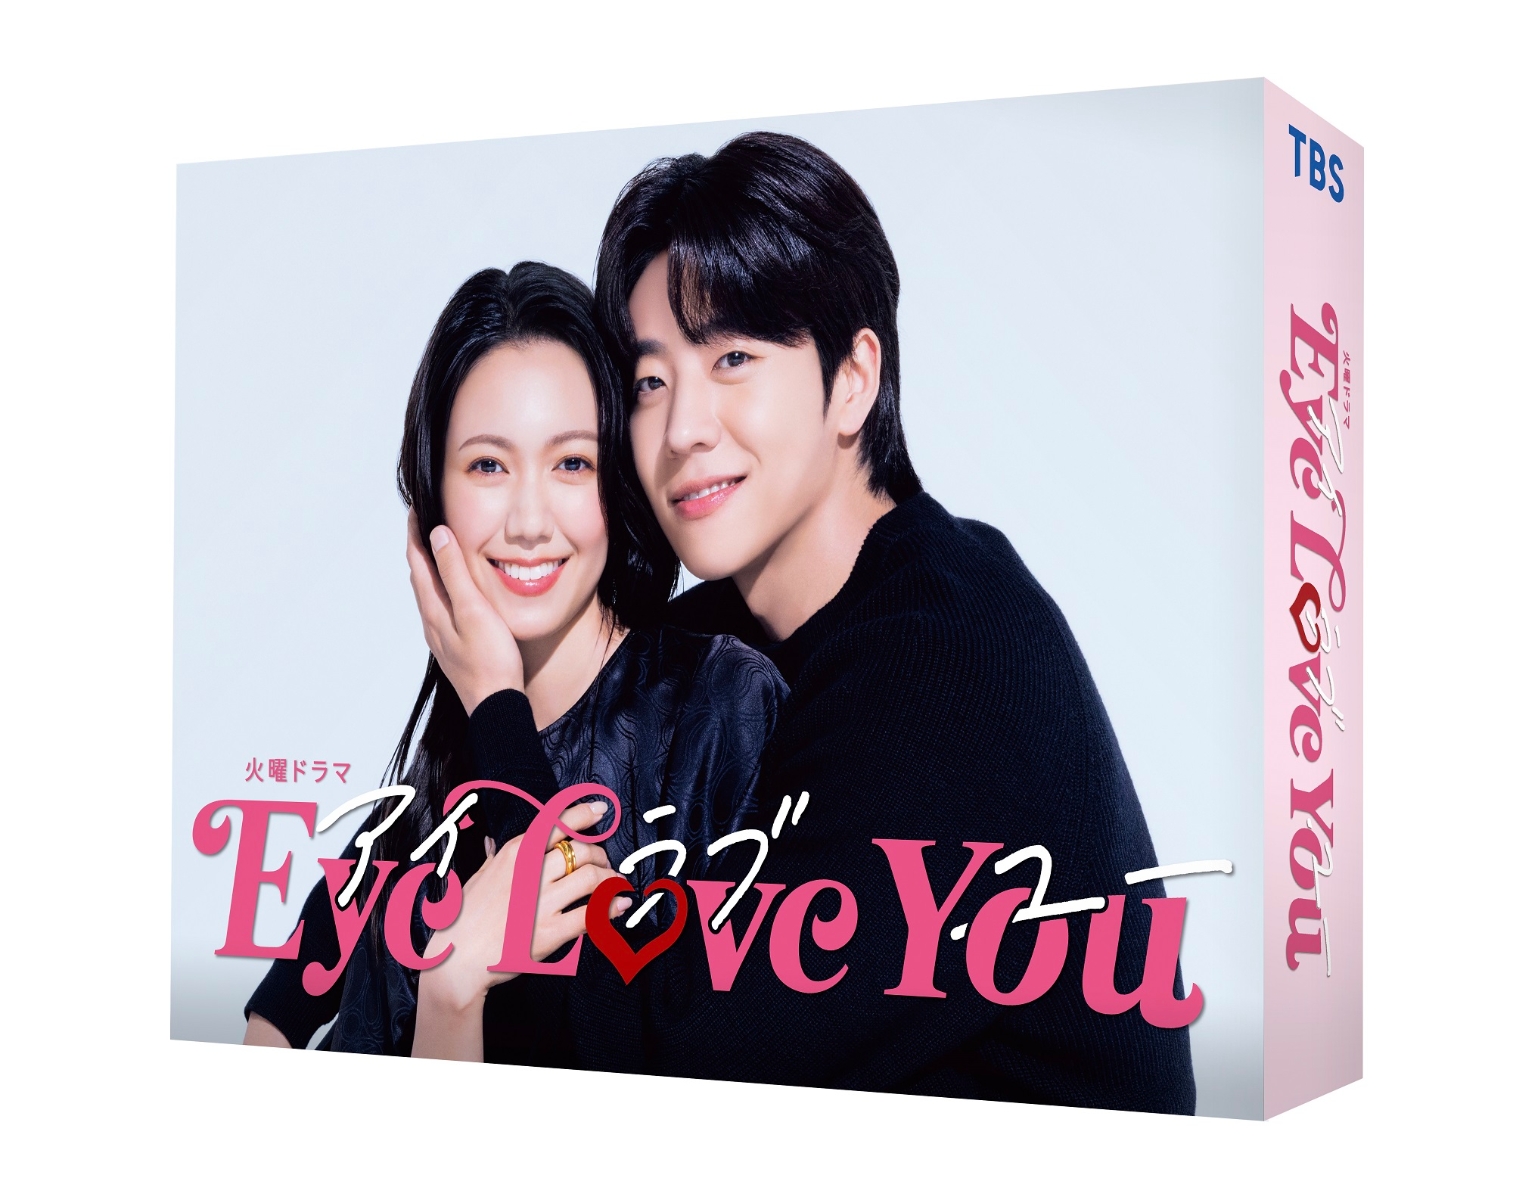 楽天ブックス: Eye Love You Blu-ray BOX【Blu-ray】 - 二階堂ふみ 